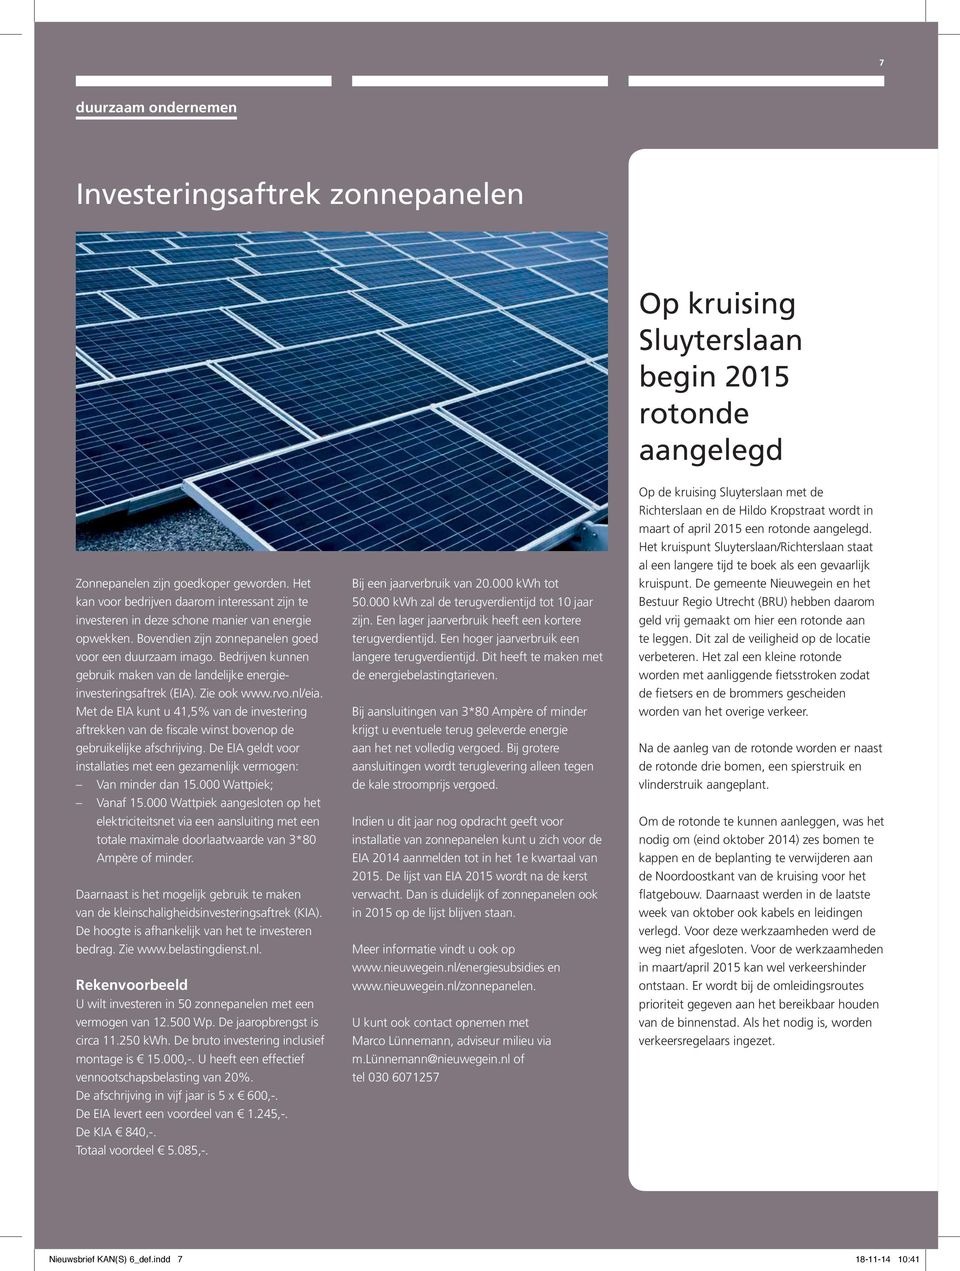 Bedrijven kunnen gebruik maken van de landelijke energieinvesteringsaftrek (EIA). Zie ook www.rvo.nl/eia.